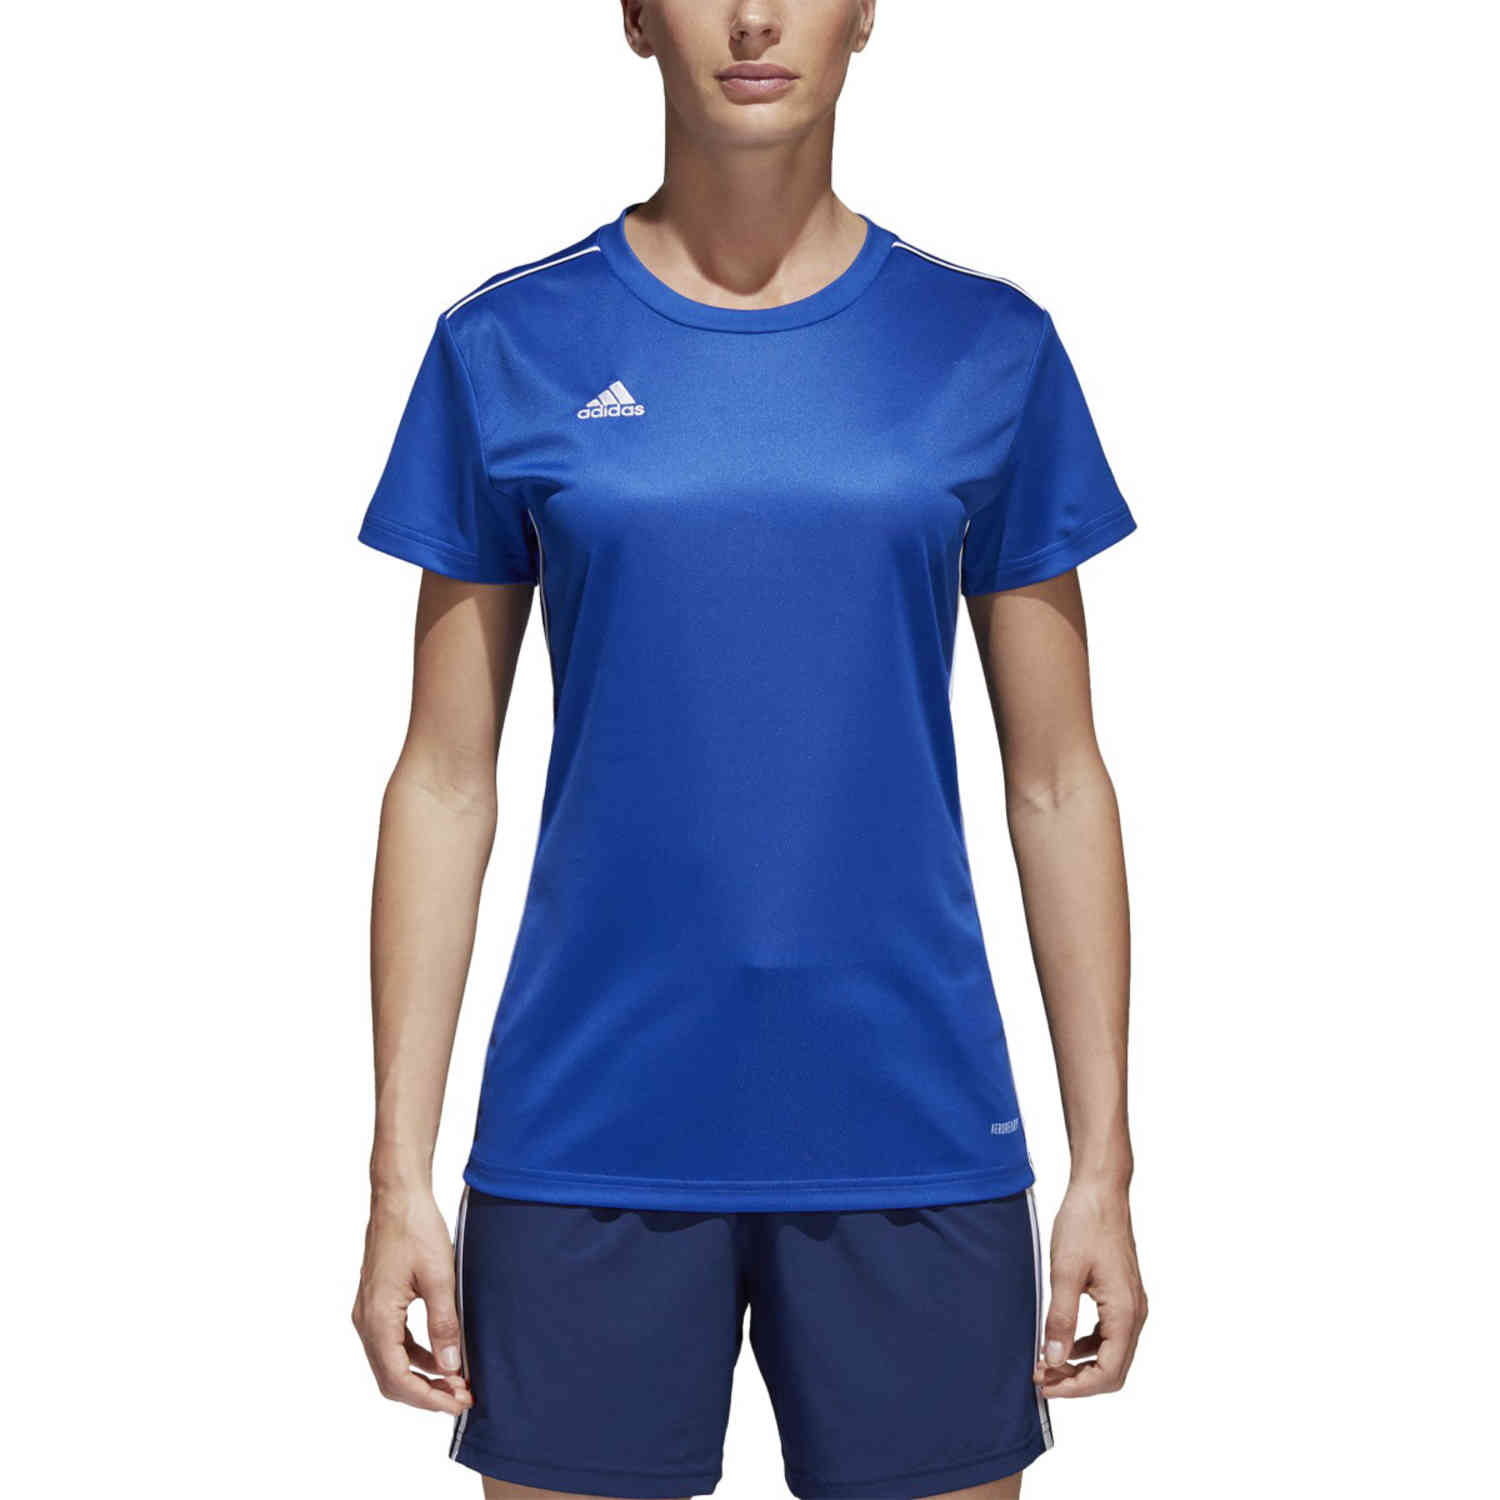 Womens adidas Core 18 Training Jersey - Bold Blue/White - SoccerPro